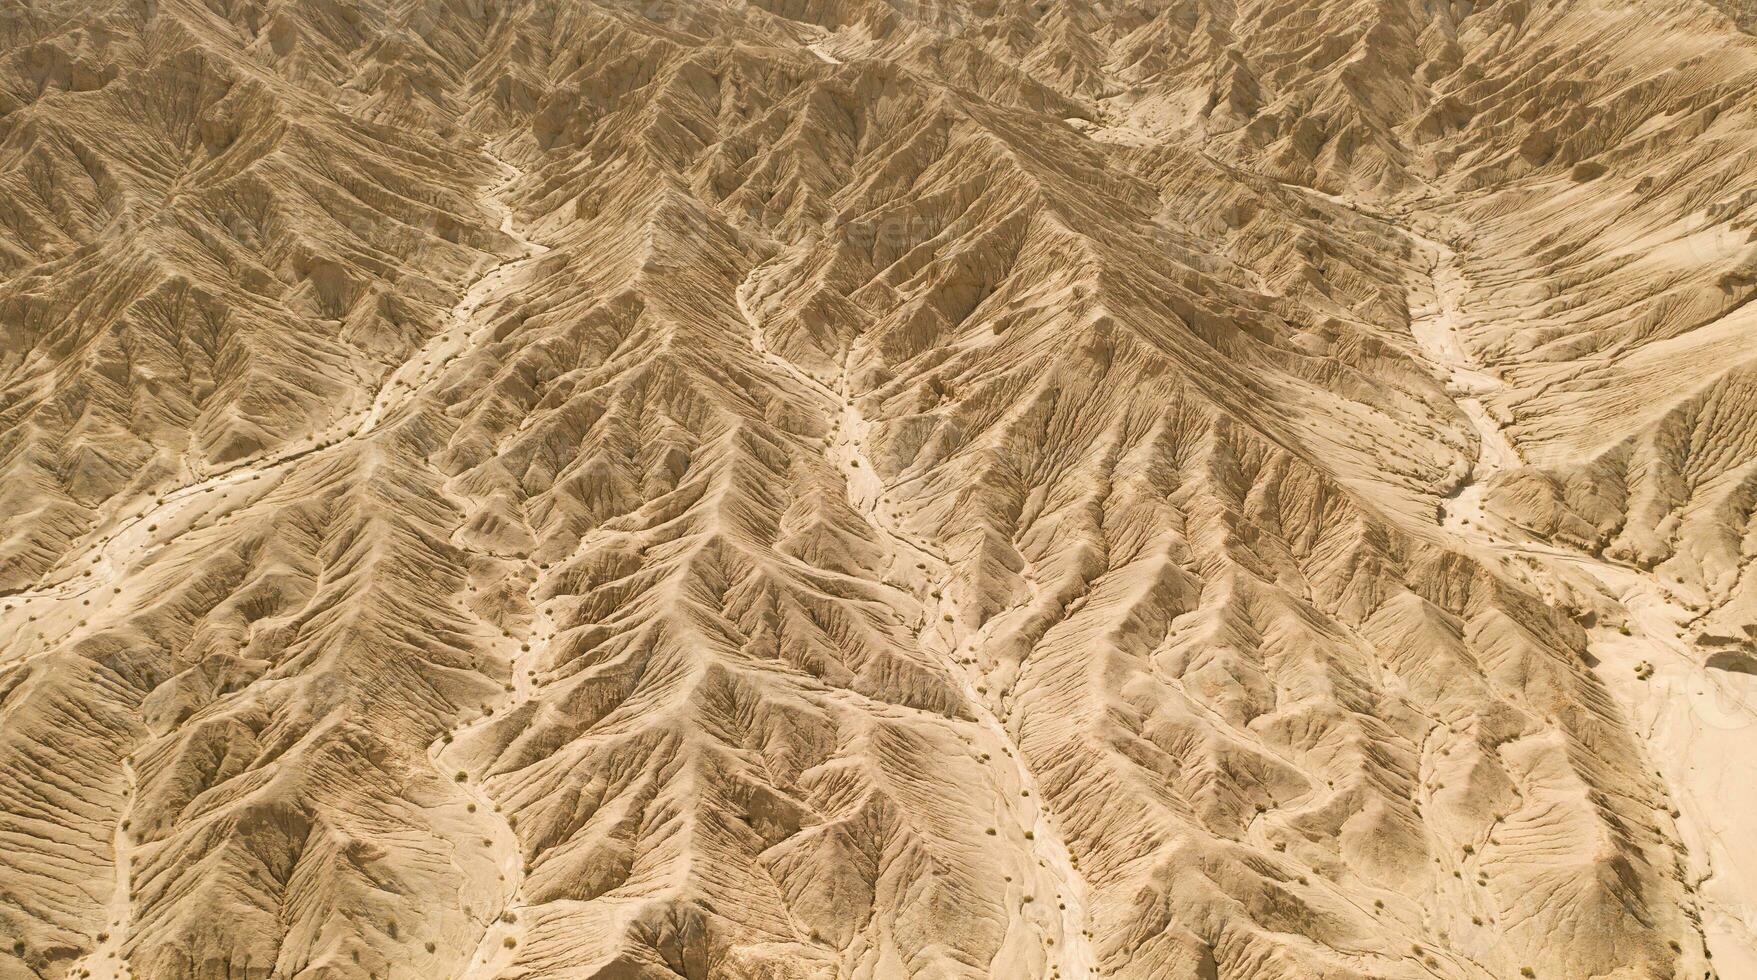 secchezza terra con erosione terreno, geomorfologia sfondo. foto